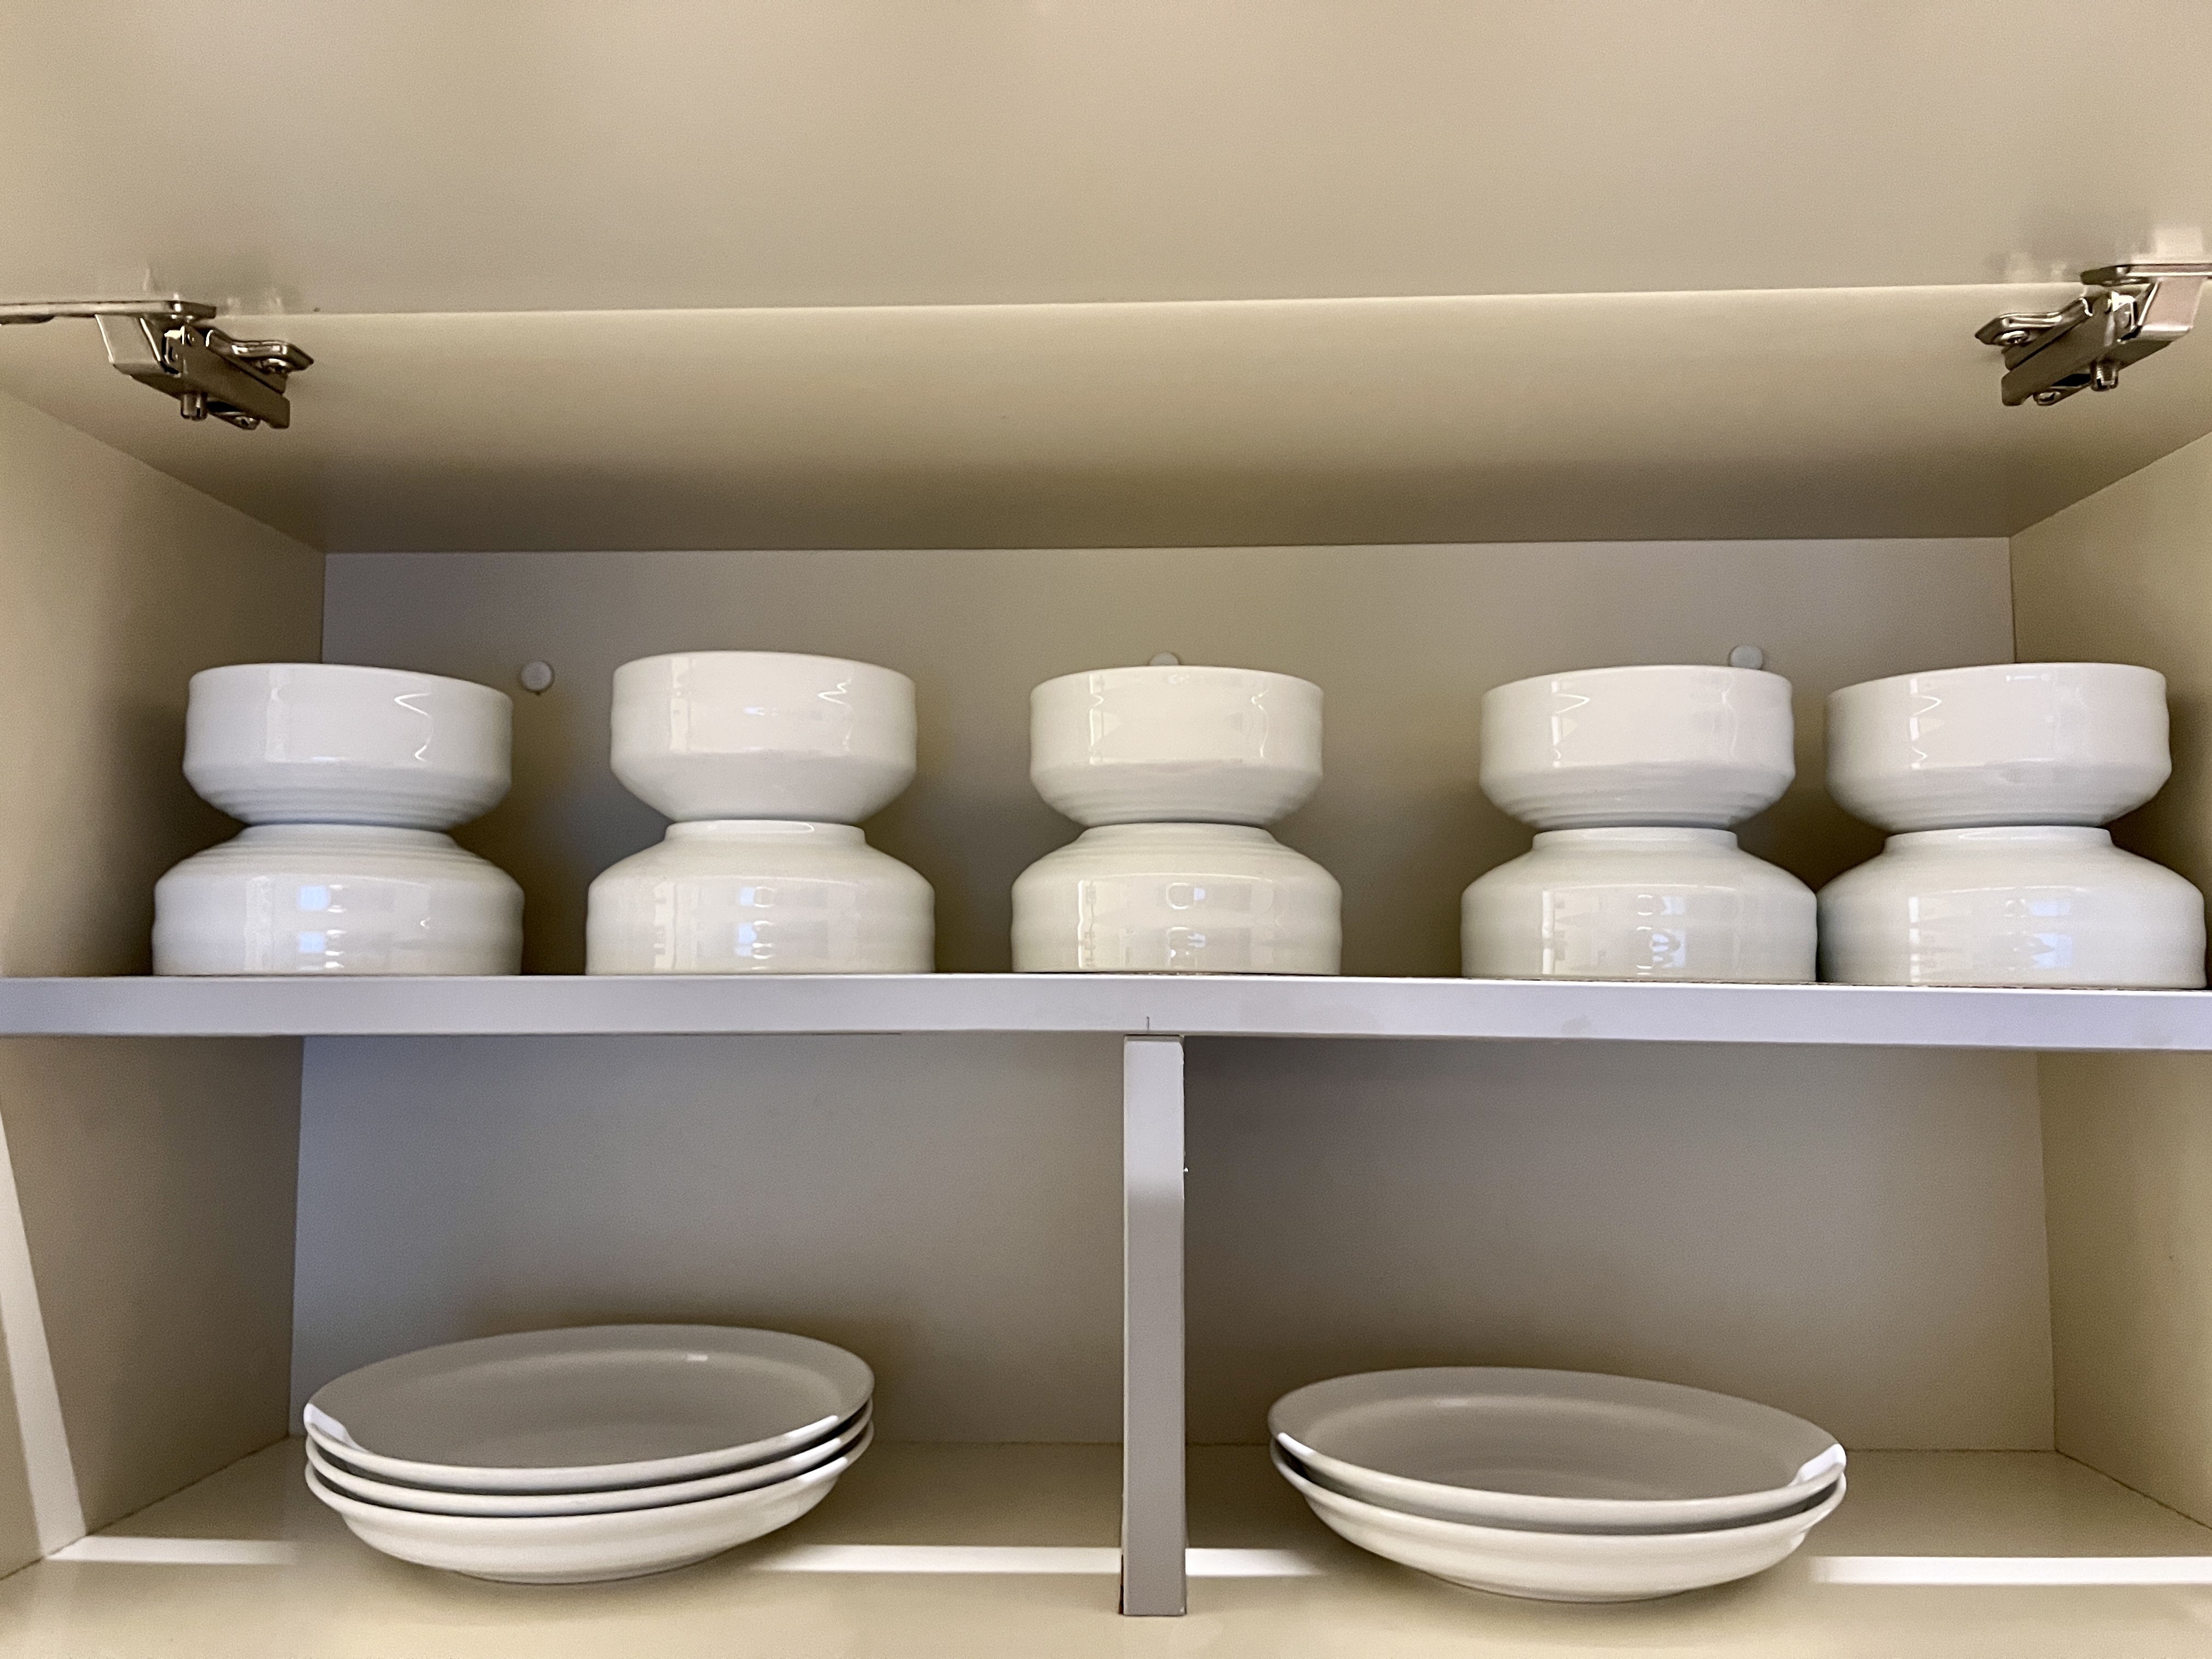 소노벨 C동 스위트(온돌) 밥솥 각종 식기 그릇